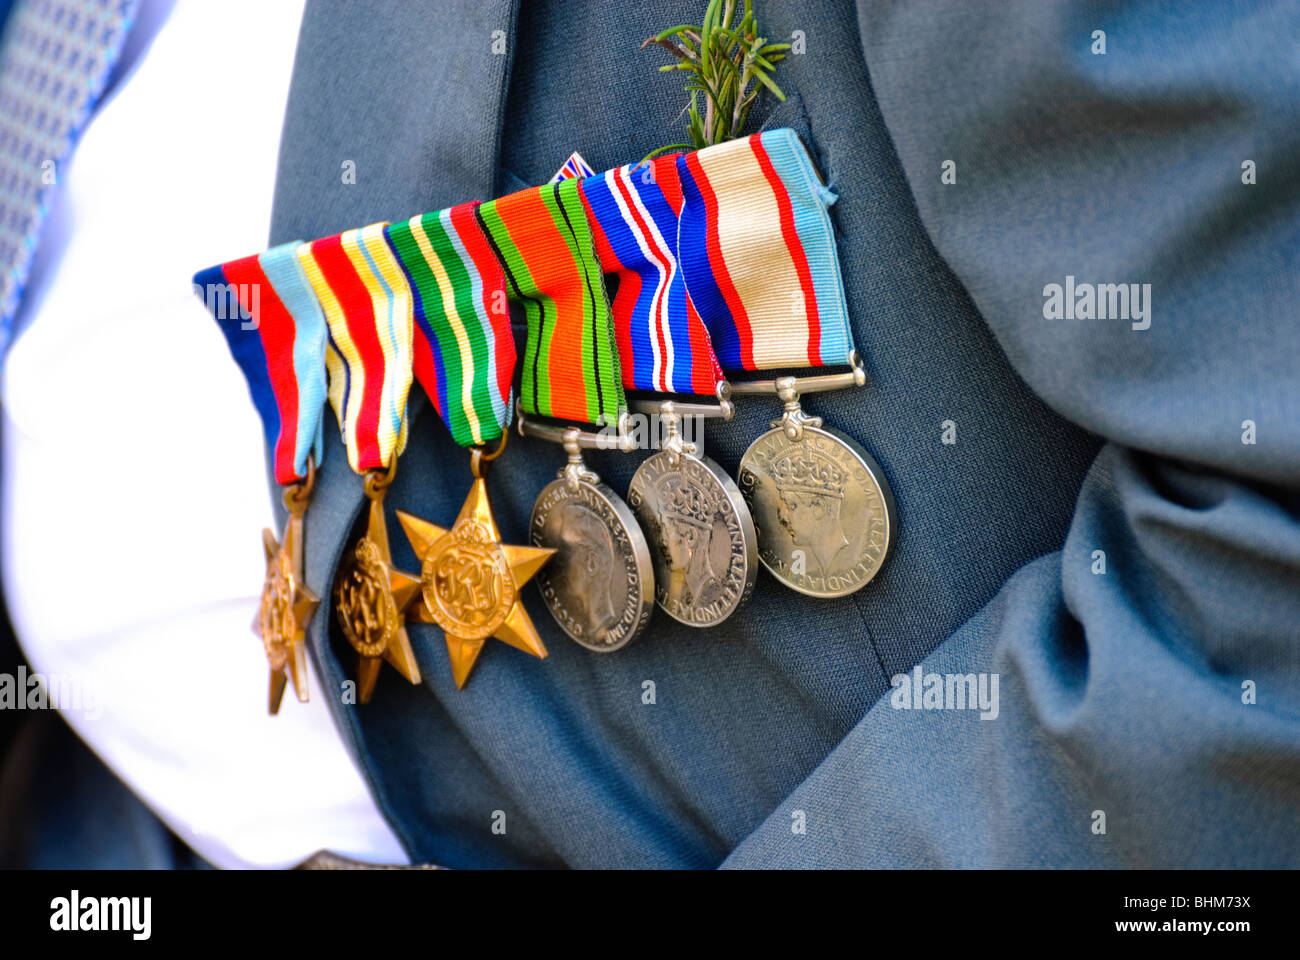 Krieg Medaillen, Stolz von einem älteren Kriegsveteranen während eines ANZAC Day Parade, Australien getragen. Brave militärischen Veteran Stolz tragen Medaillen auf der Brust. Stockfoto